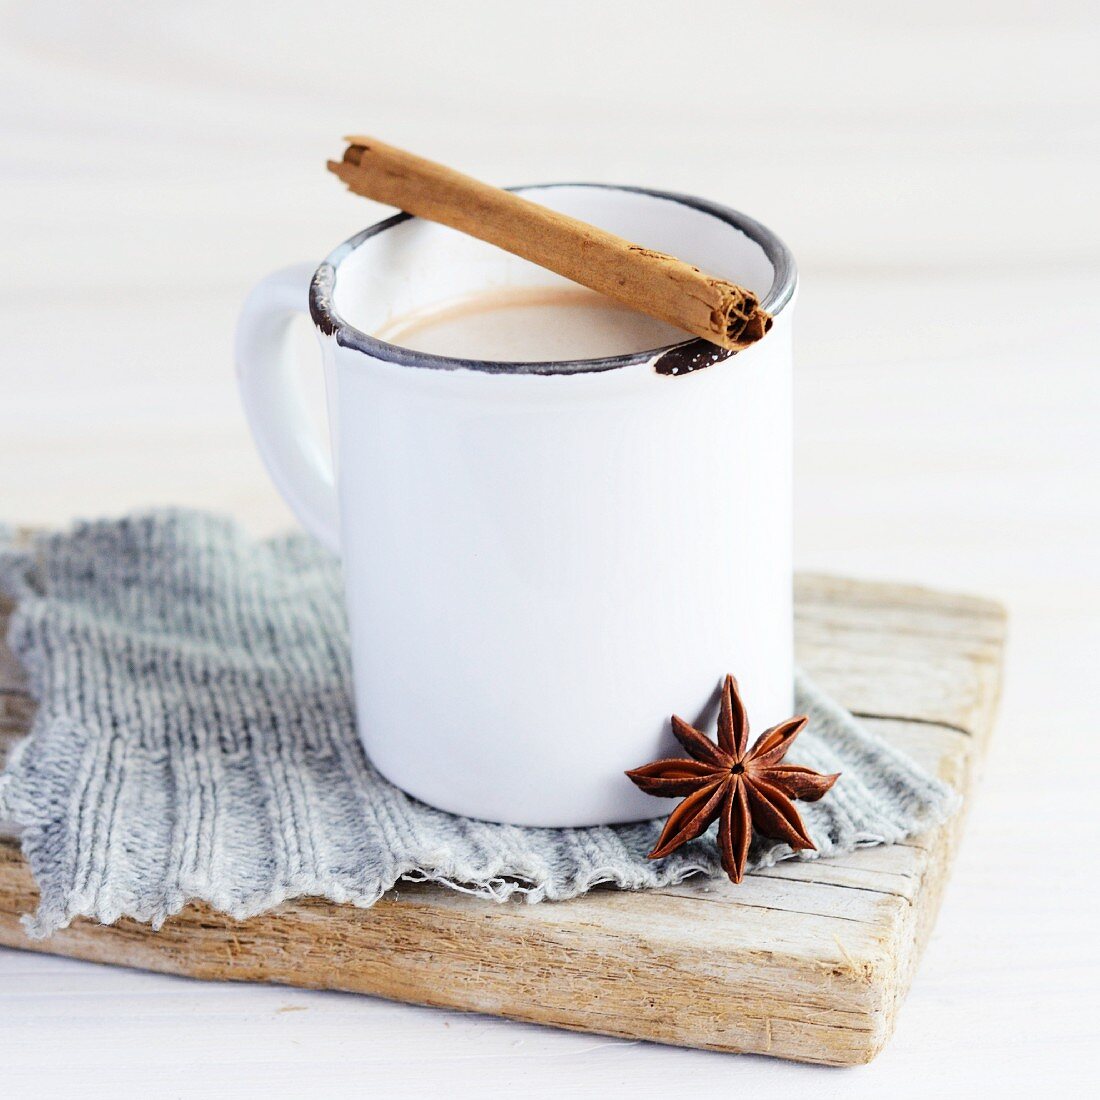 weiße Emaille Tasse mit Tee, darauf liegt eine Zimtstange und ein Anisstern lehnt an der Tasse, alles steht auf einem gestrickten grauen Flicken und einem verwittertem Holzbrett